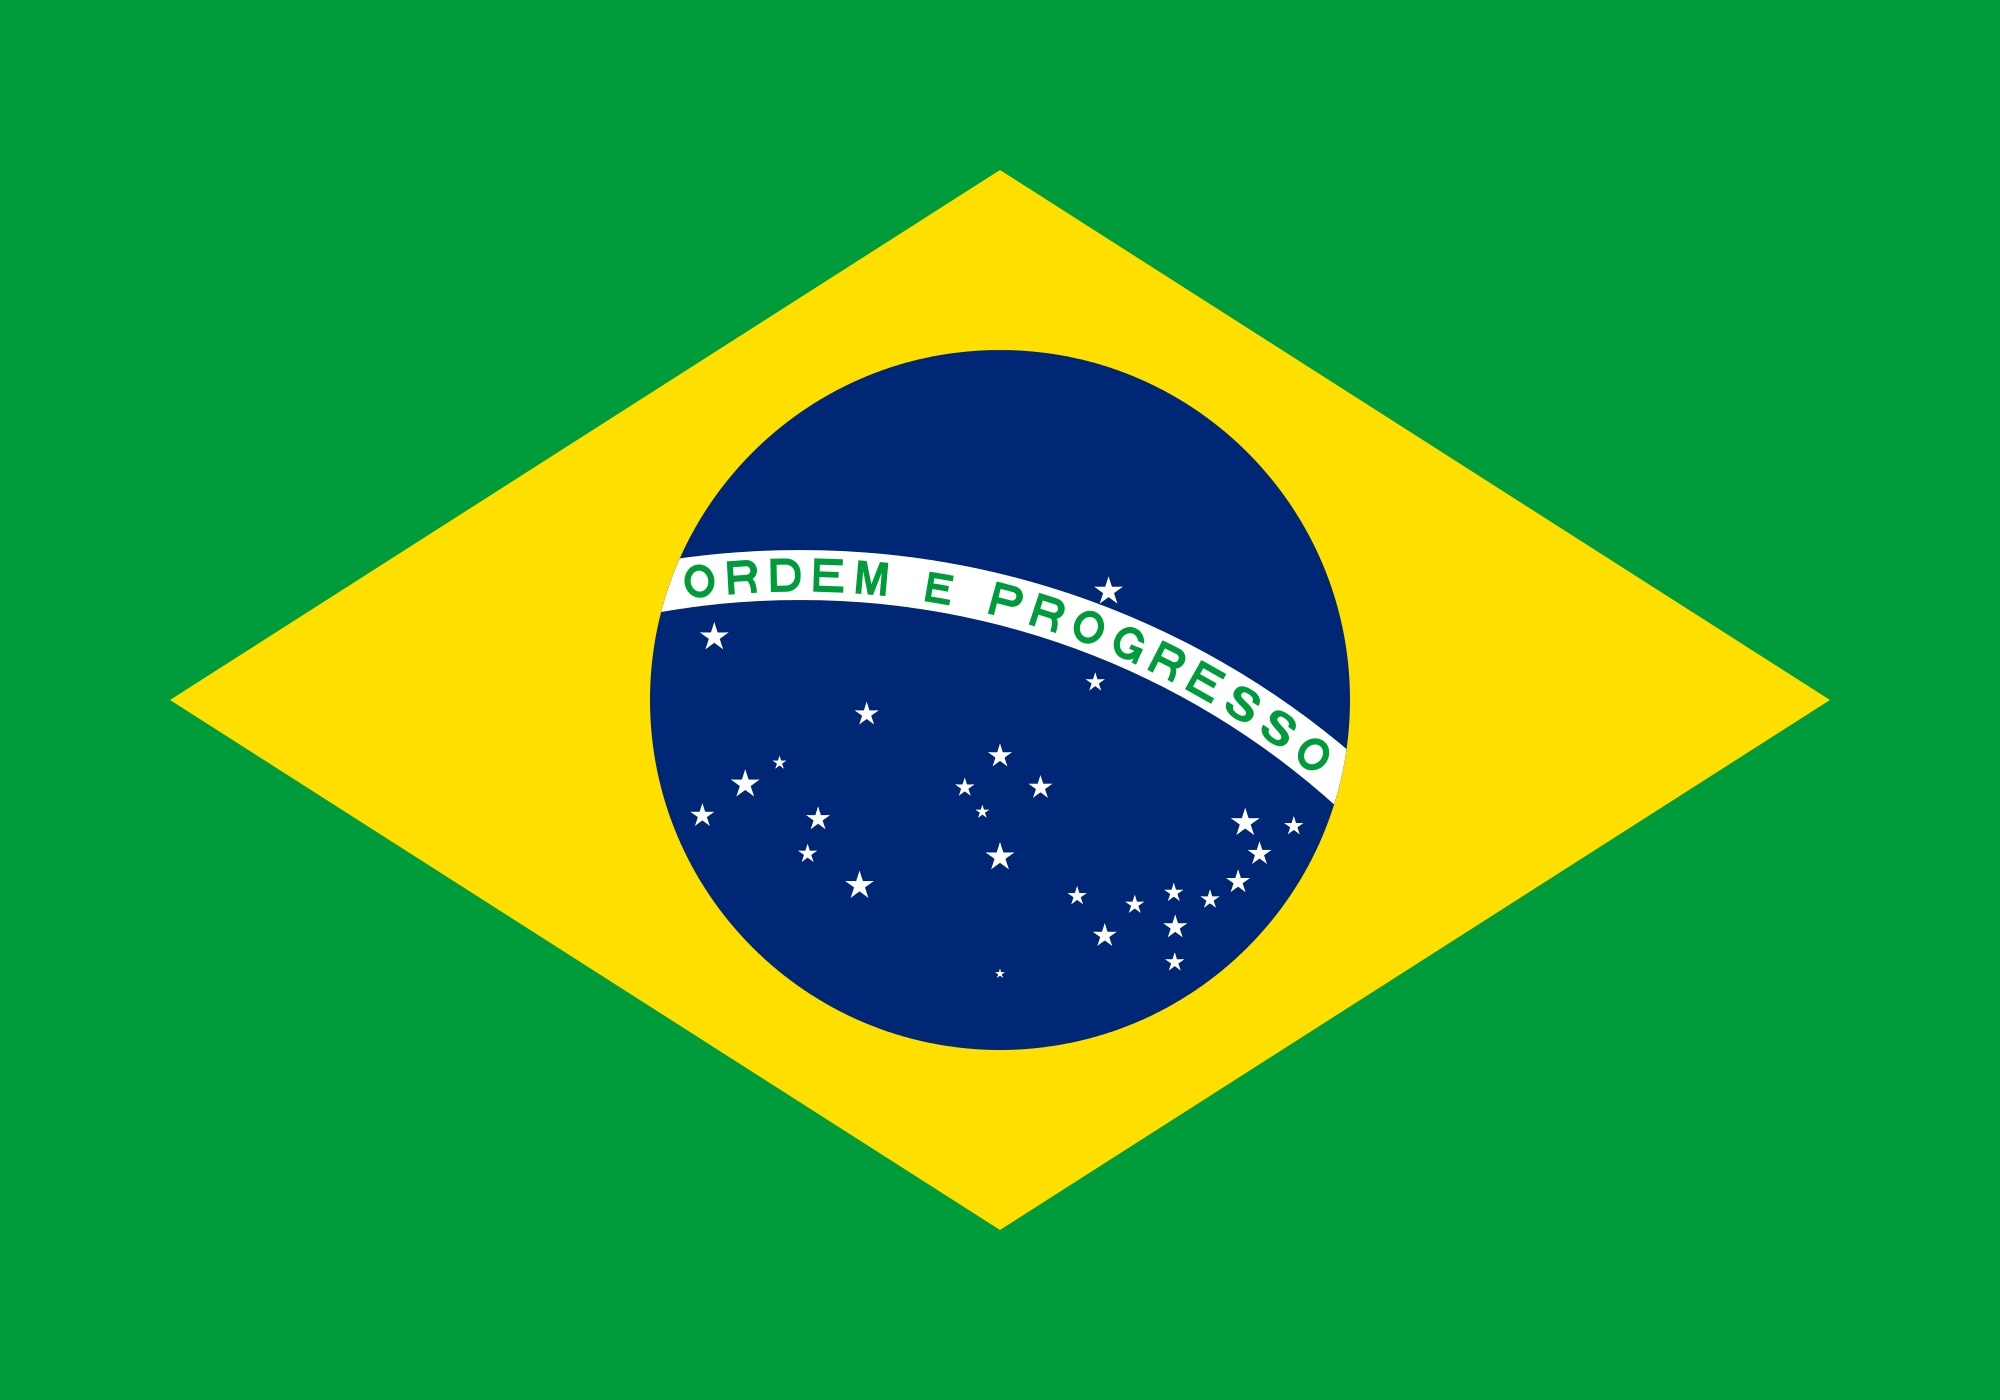 Bandeira do Brasil — Português (Brasil)